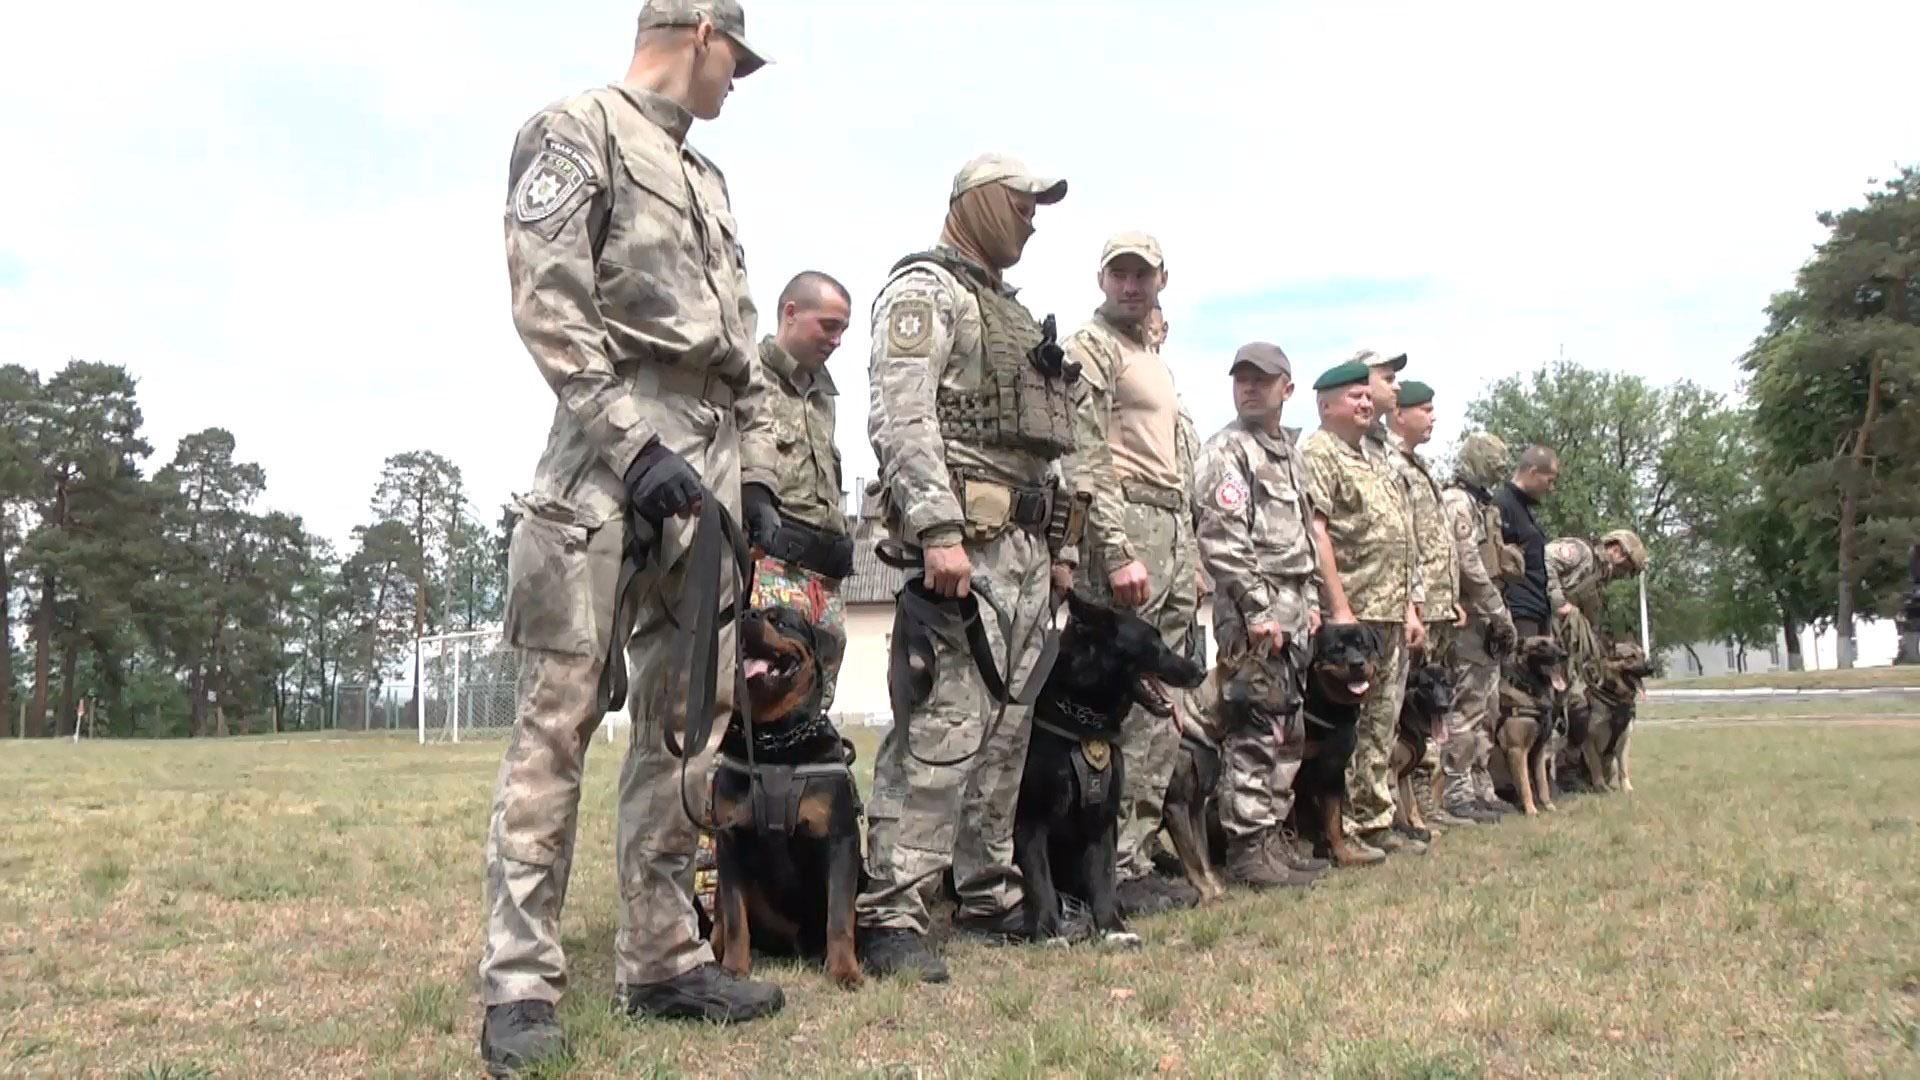 На Львівщині підготували перших службових собак для спецназу